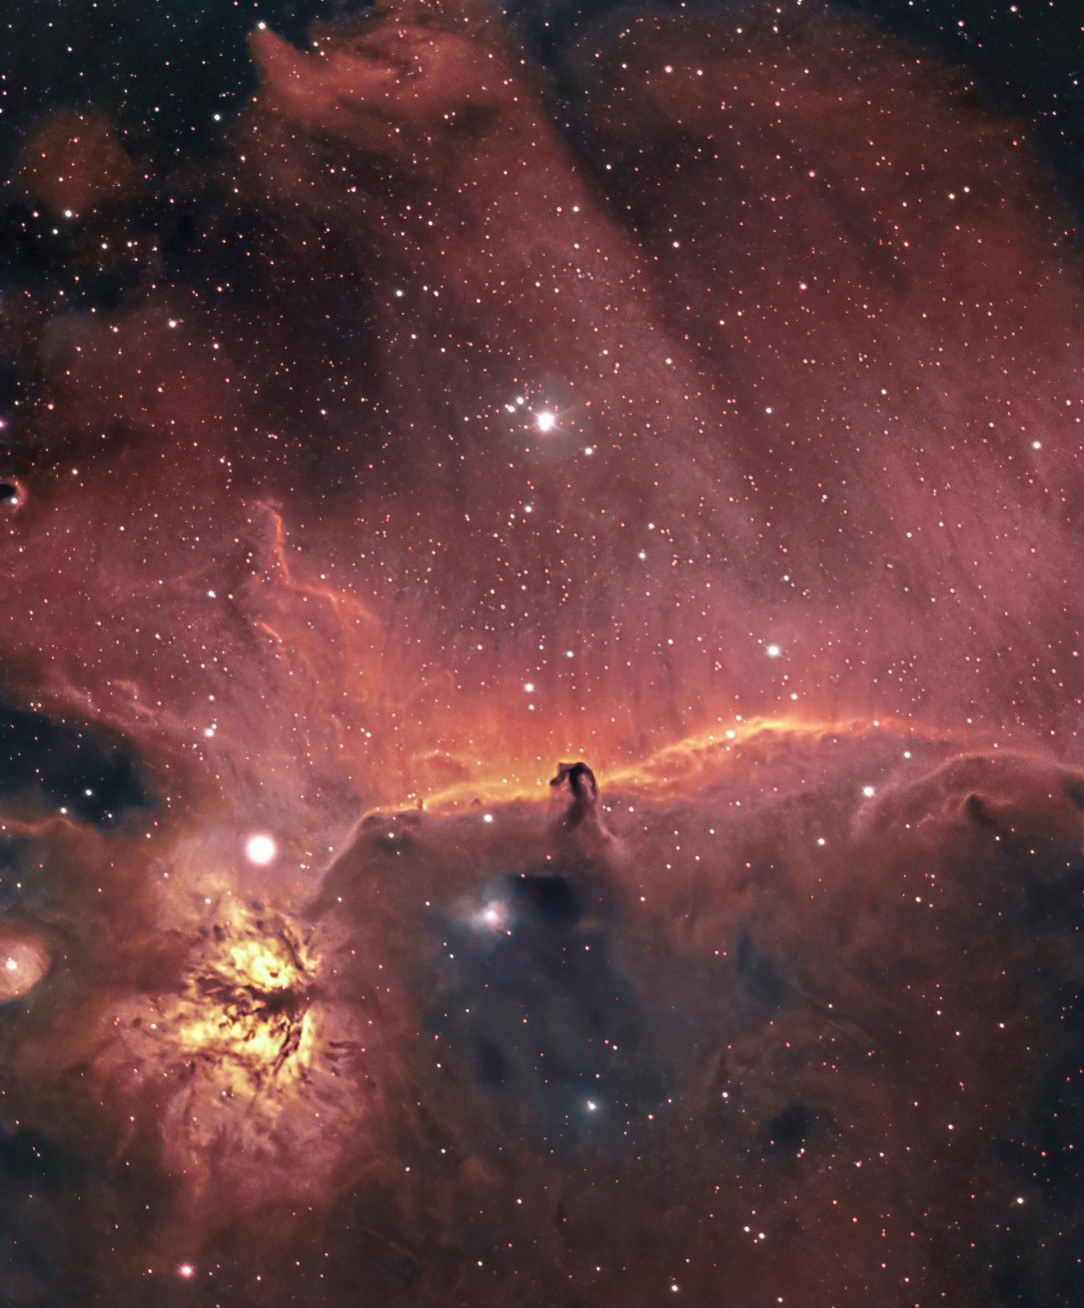 Horse Head and Flame Nebula